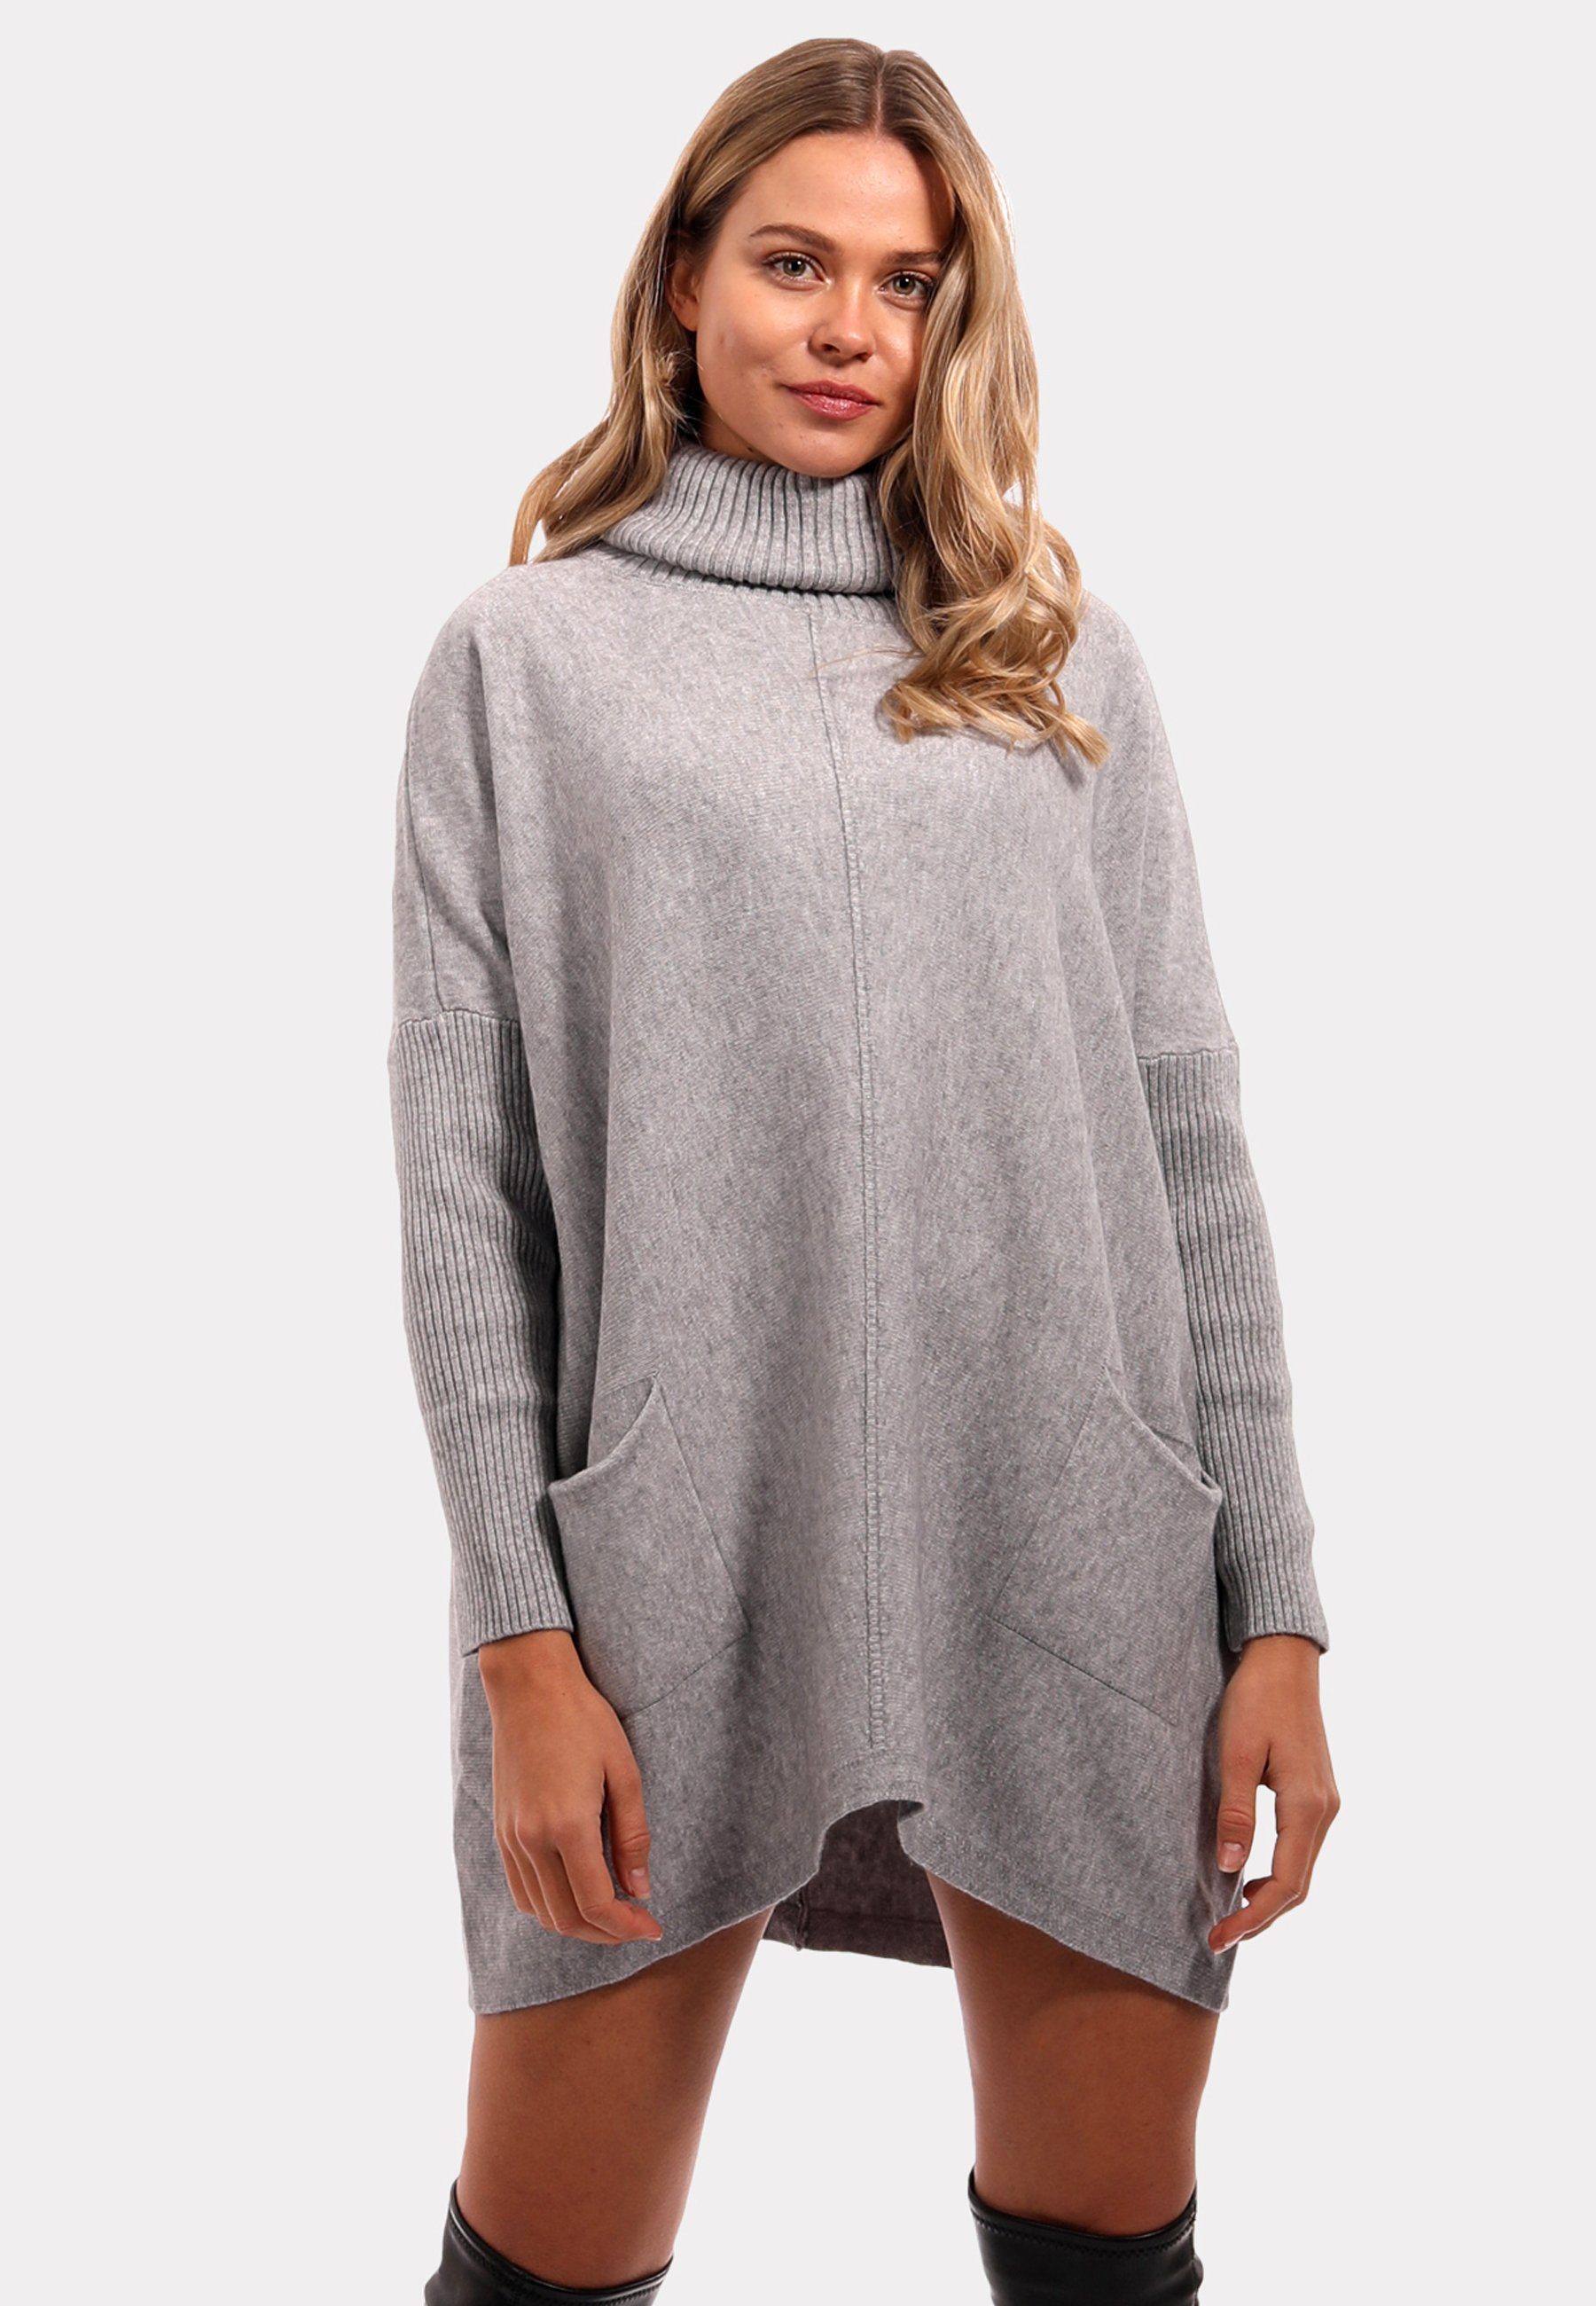 YC Fashion & Style Rollkragenpullover Pullover aus Feinstrick Casual Sweater Strickmix Grau